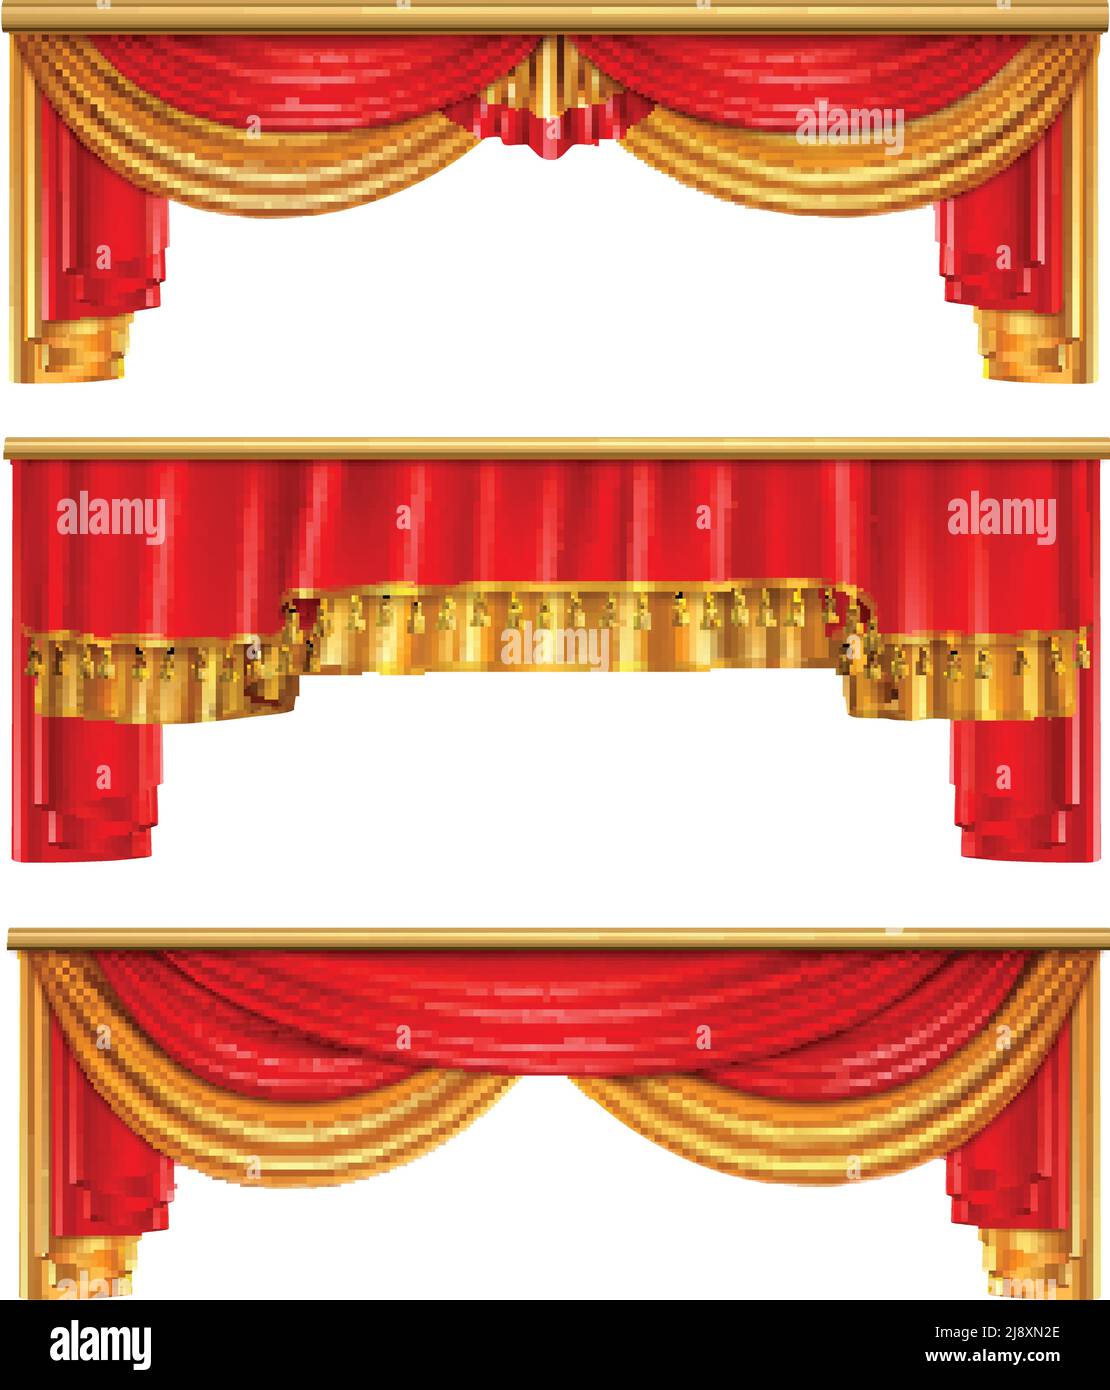 Rideaux de luxe composition réaliste avec des couleurs rouge et or pour illustration vectorielle de l'intérieur du théâtre Illustration de Vecteur